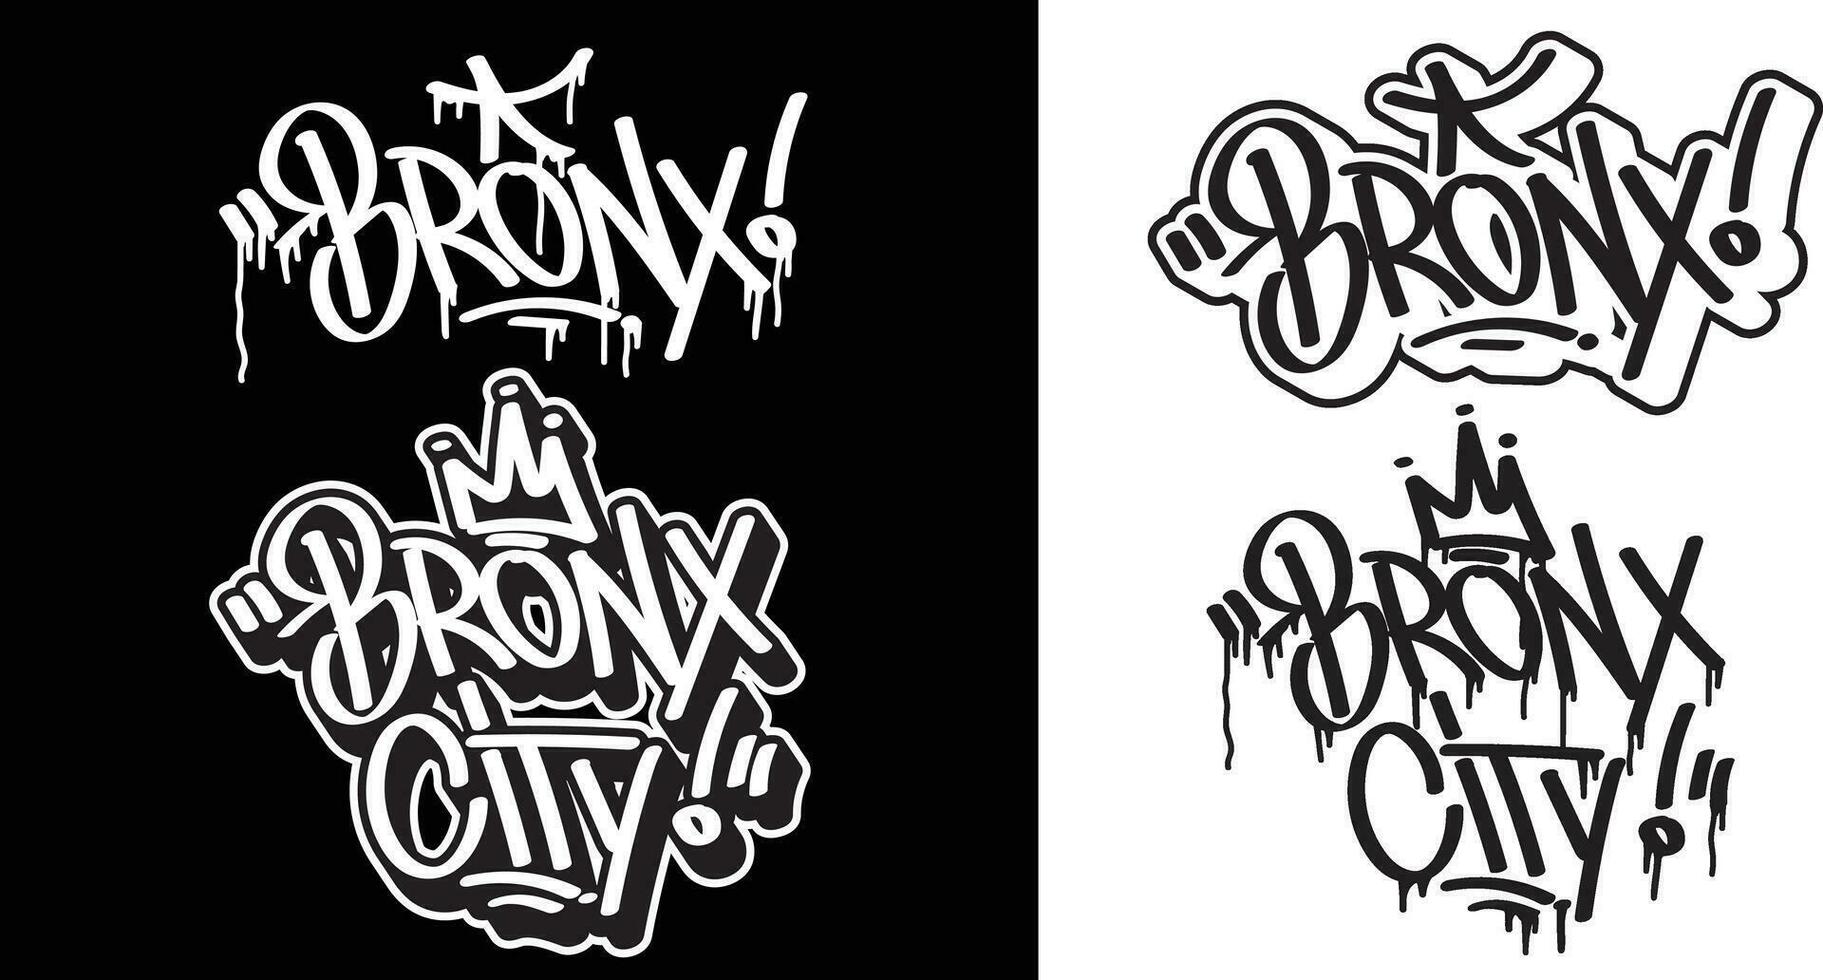 bronx tekst in graffiti label doopvont stijl. graffiti tekst vector illustraties.